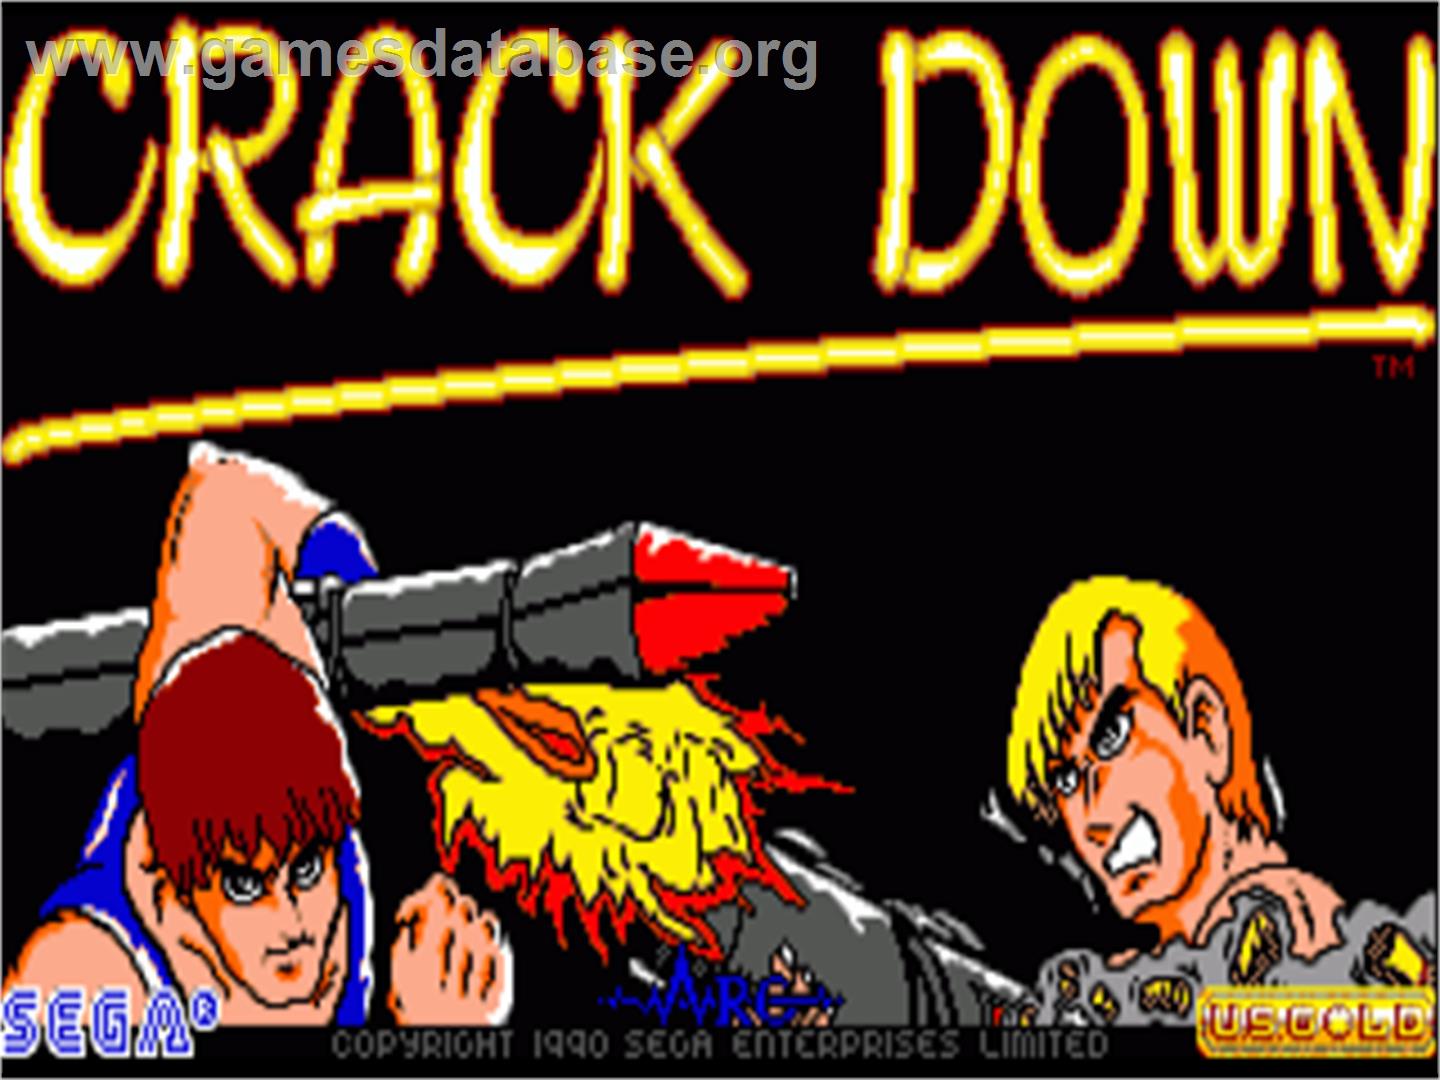 Crack Down - Commodore Amiga - Artwork - Title Screen